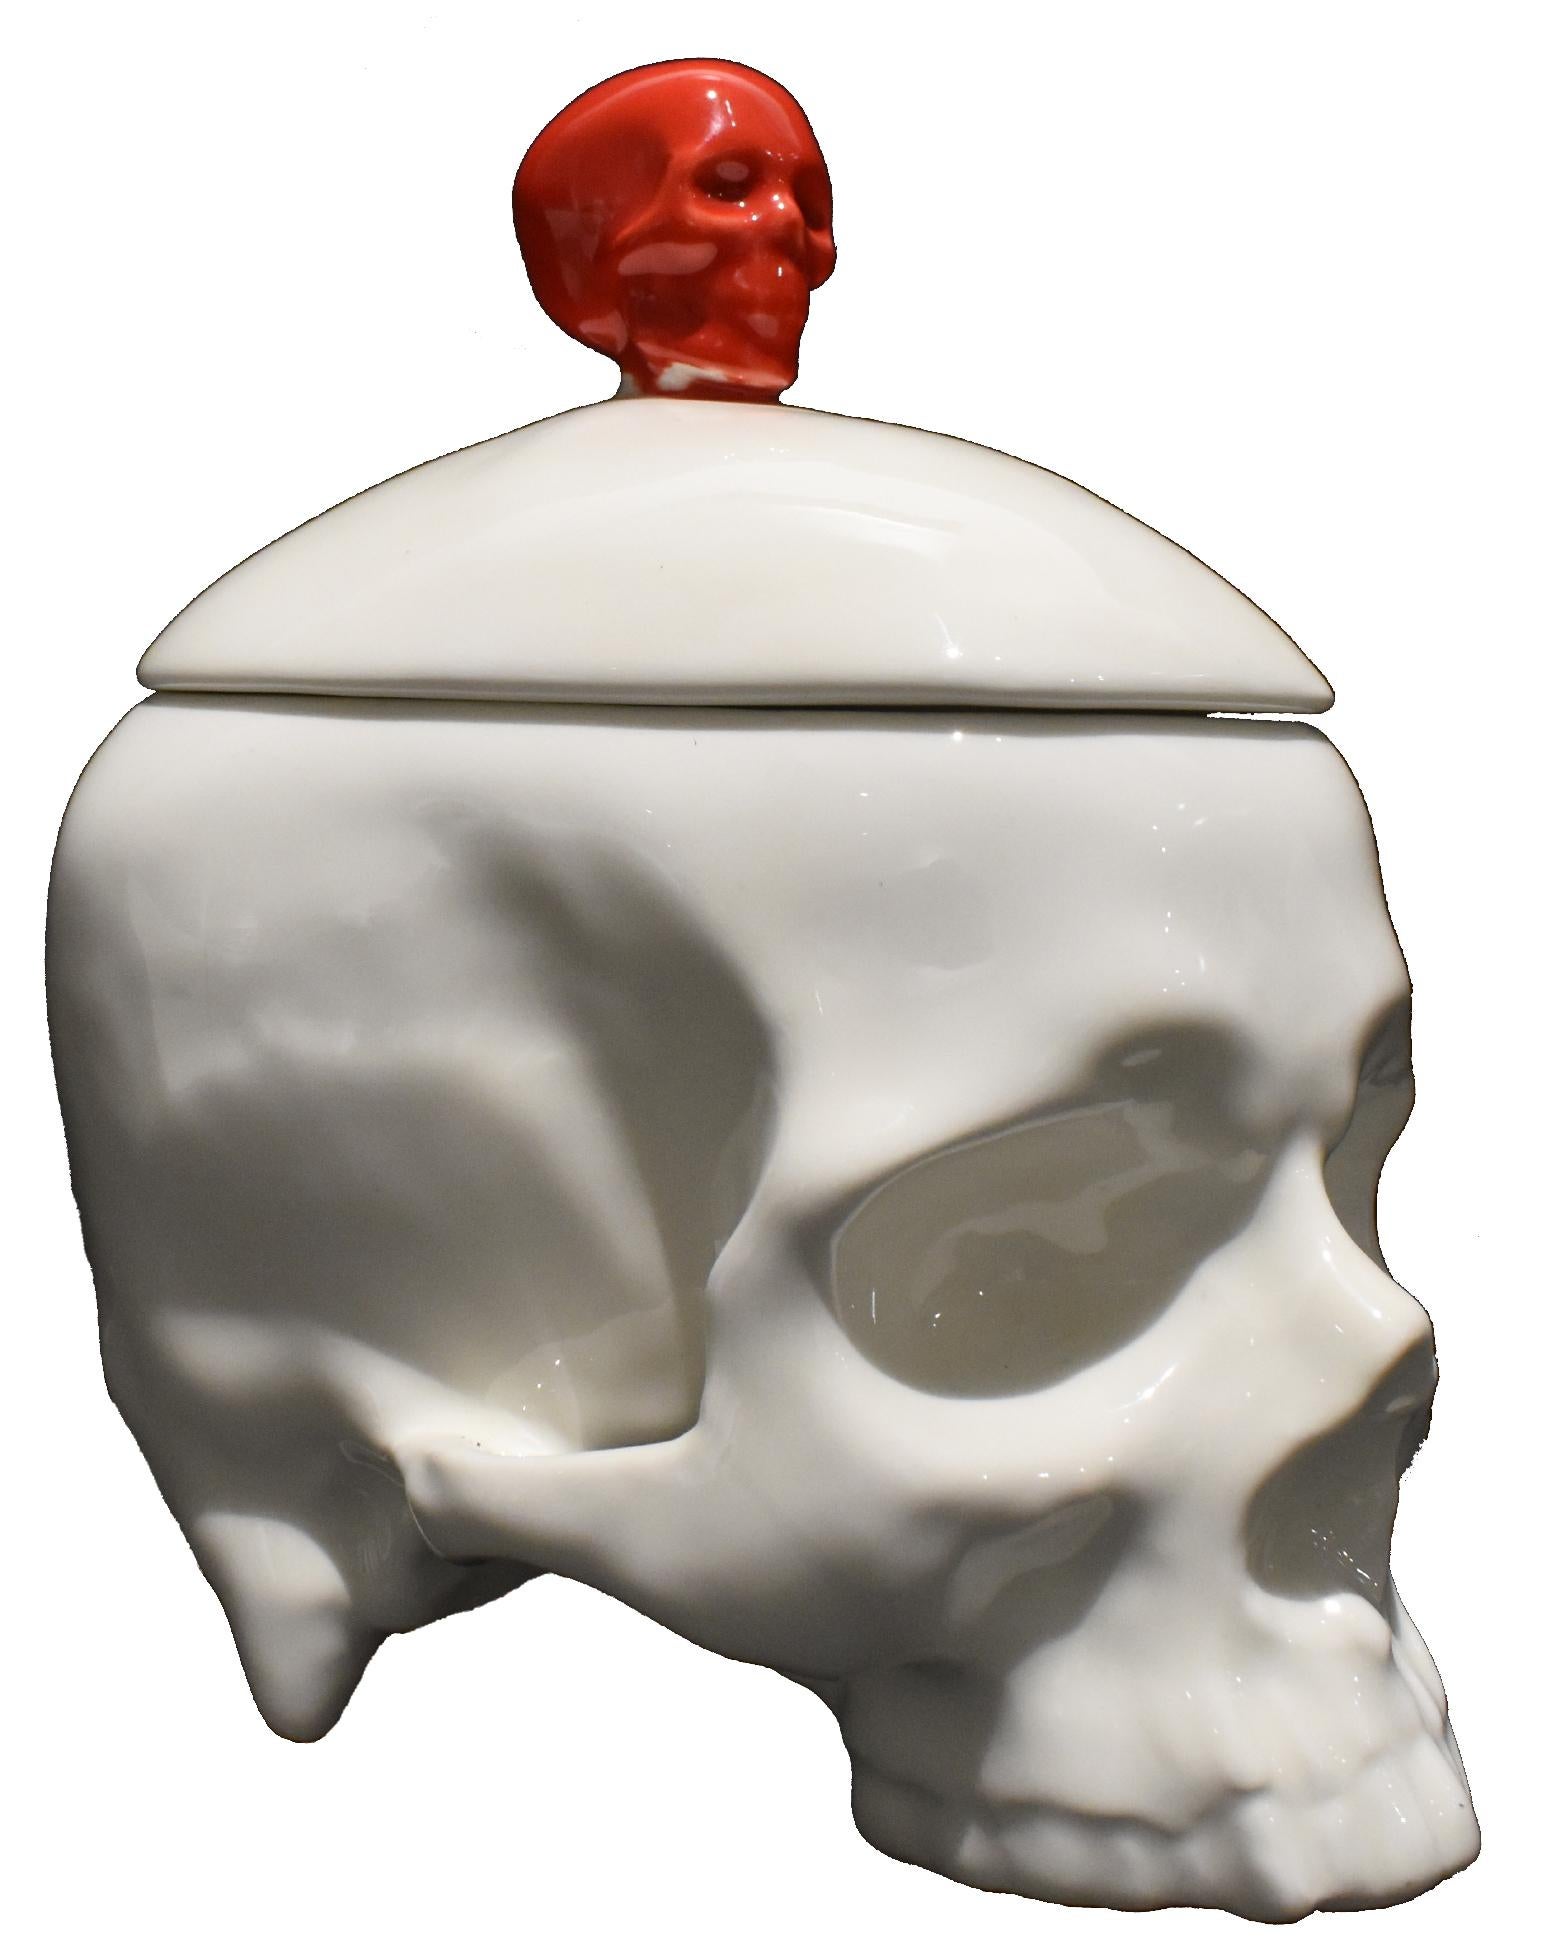 Skulptur mit Totenkopf aus Porzellan in Weiß und Rot, abnehmbarer Deckel, jetzt erhältlich – Sculpture von Huang Yulong